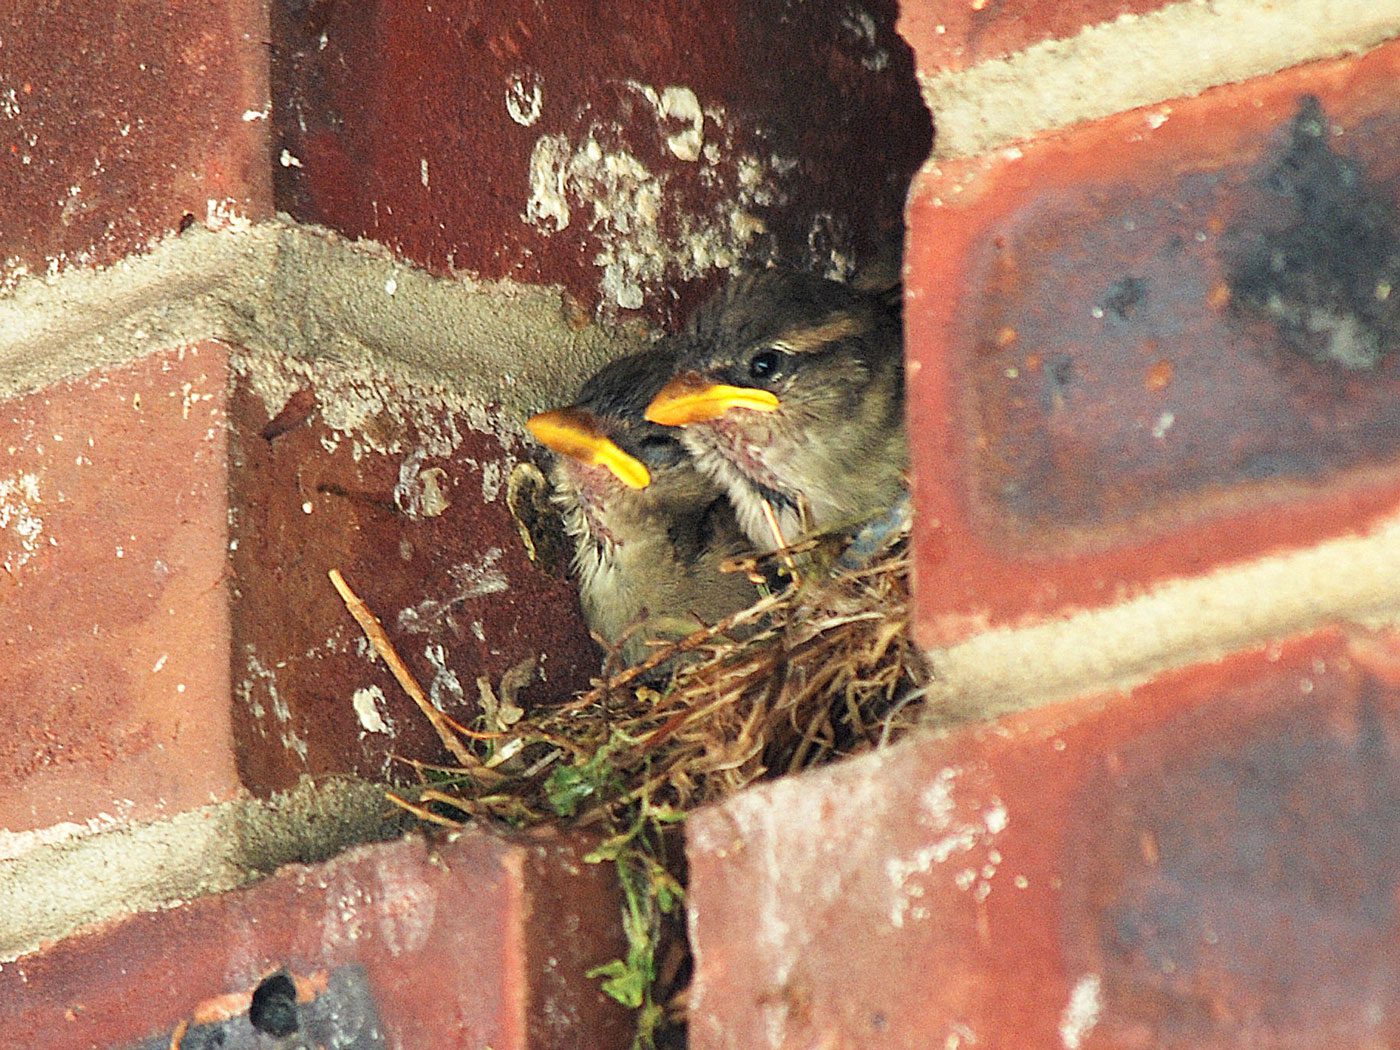 https://www.allaboutbirds.org/news/wp-content/uploads/2009/04/Nest-in-buiilding-Billtacular-BS-FI.jpg